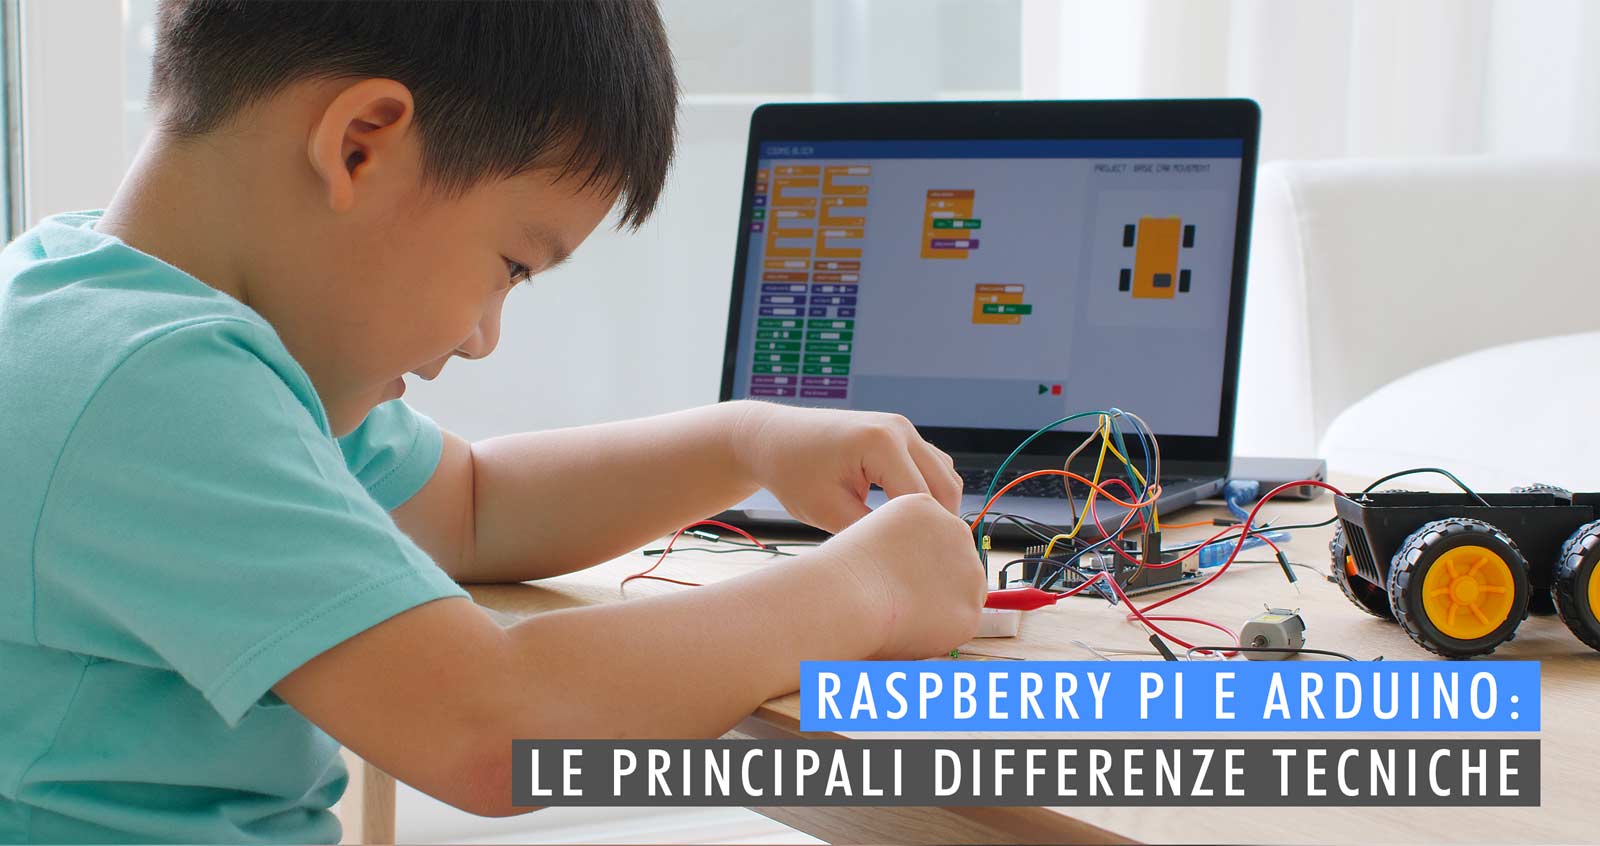 Raspberry Pi e Arduino: Le principali differenze tecniche